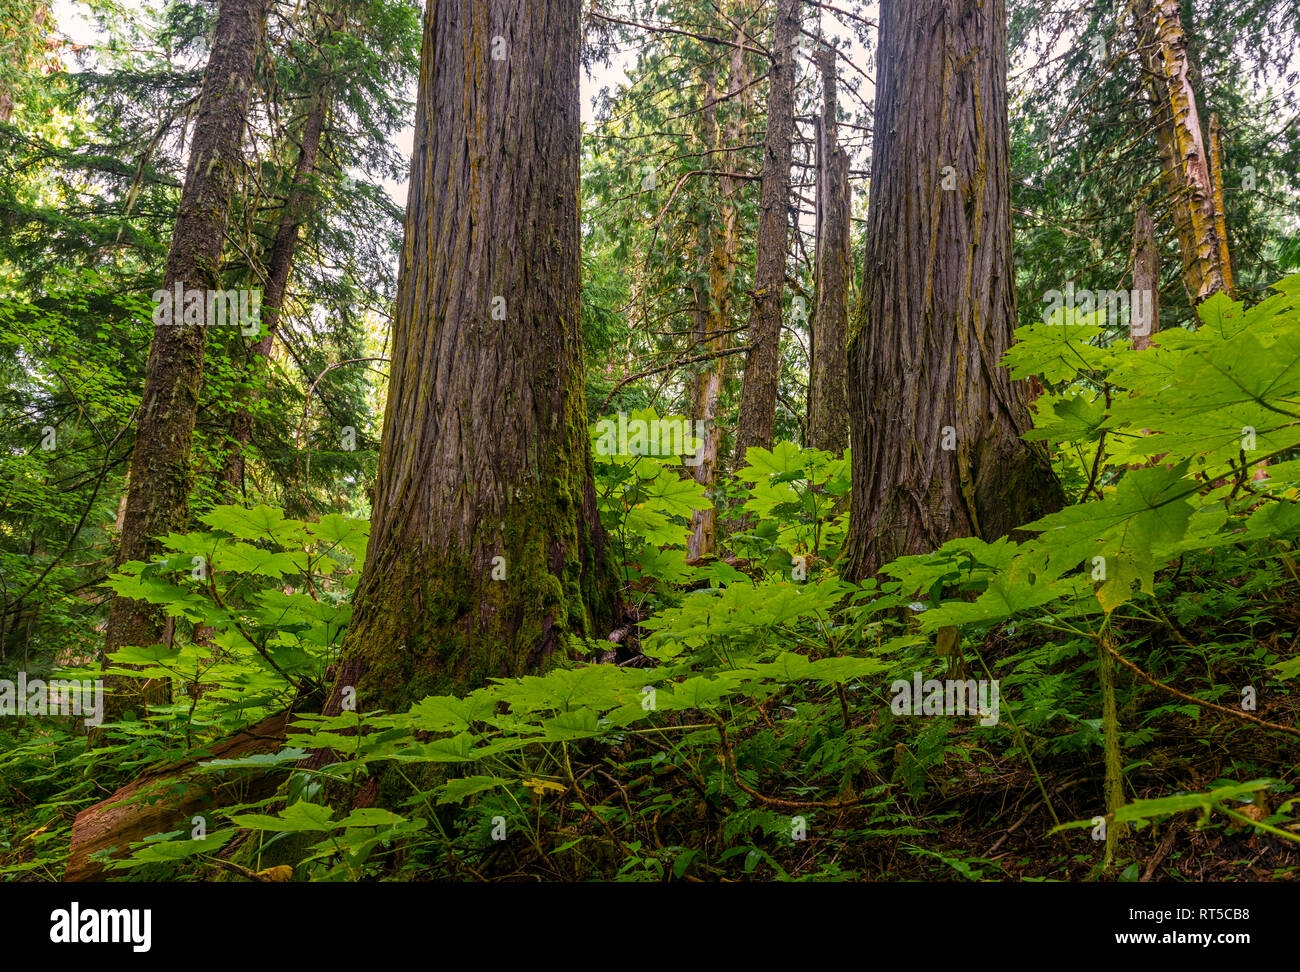 Bois de cèdre et de fougères à l'intérieur de l'ancienne forêt, seul forêt tropicale au monde, la vallée du Fraser, Prince George, Colombie-Britannique, Canada. Banque D'Images